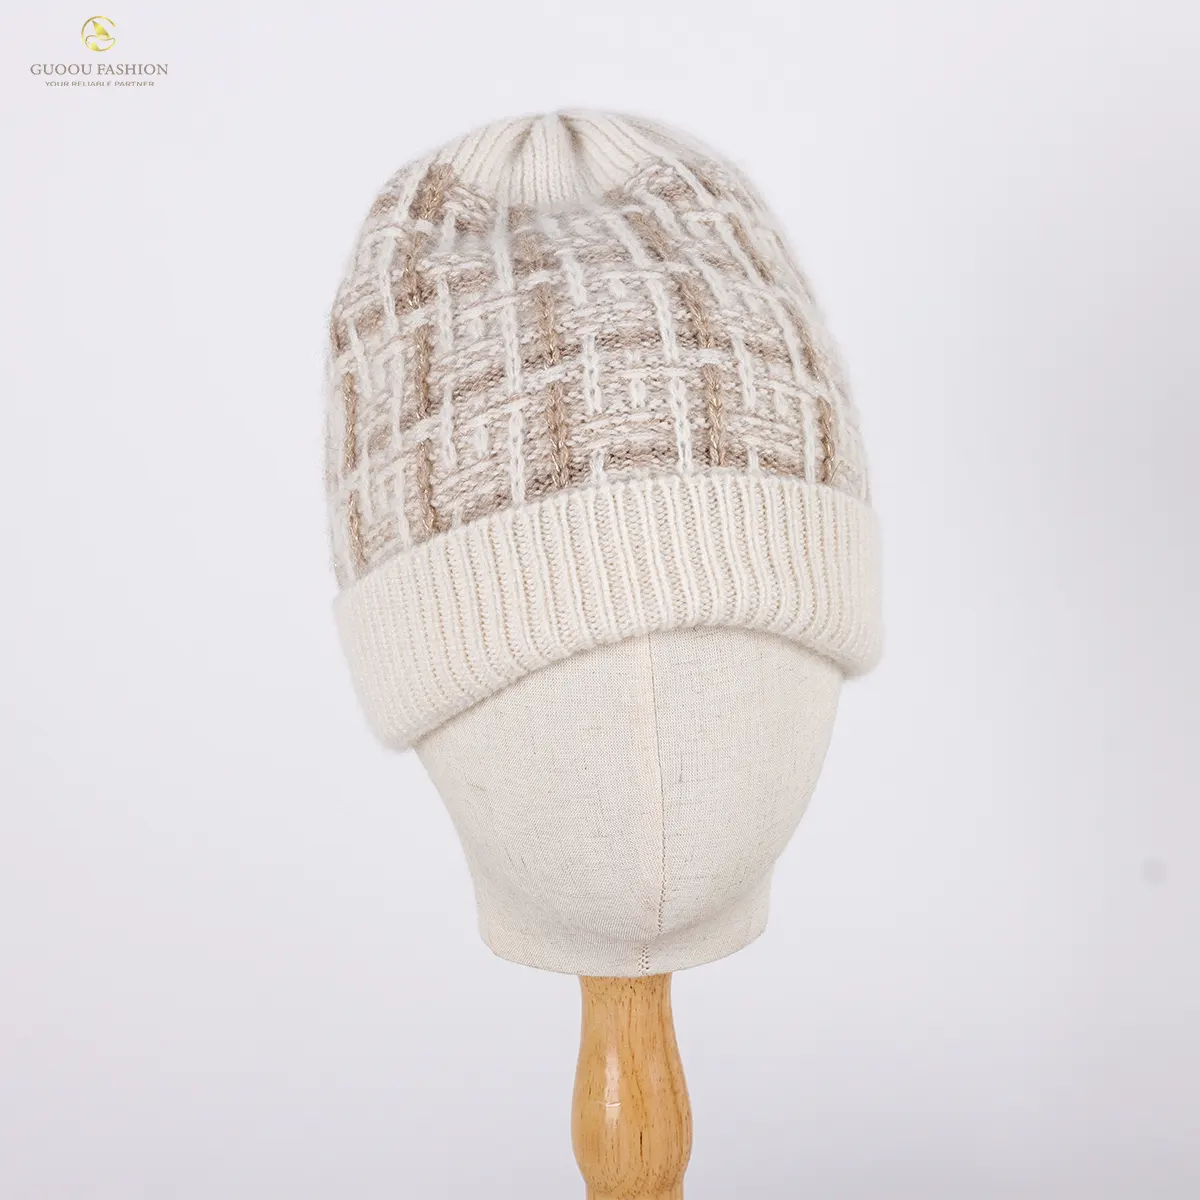 Topi rajut musim dingin, aksesoris baru topi wol pola persegi warna-warni, topi rajut musim dingin